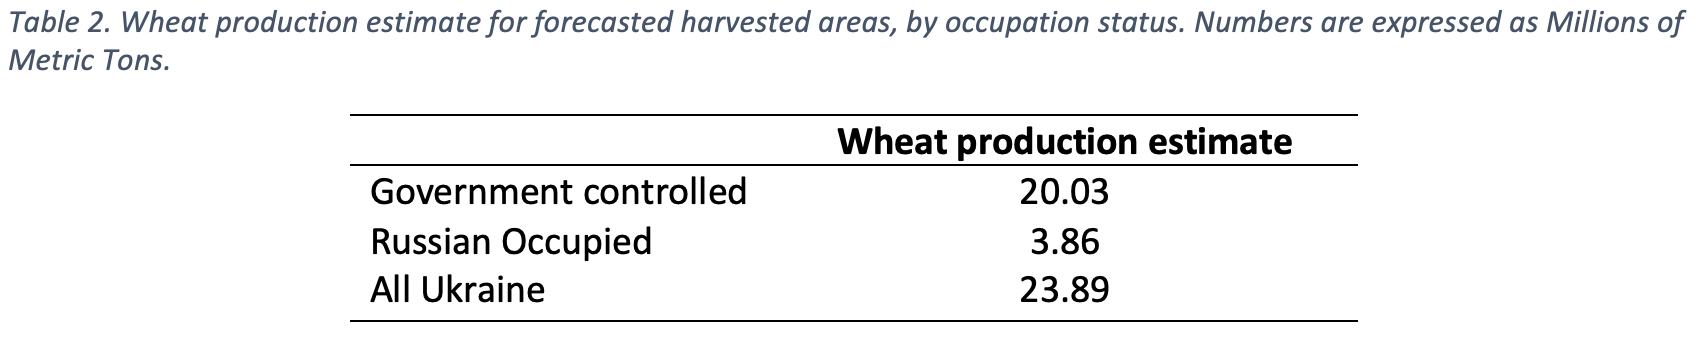 Таблиця 2. Оцінка виробництва пшениці для прогнозованих посівних площ (контрольованих Україною й окупованих Росією). Числа виражаються в мільйонах